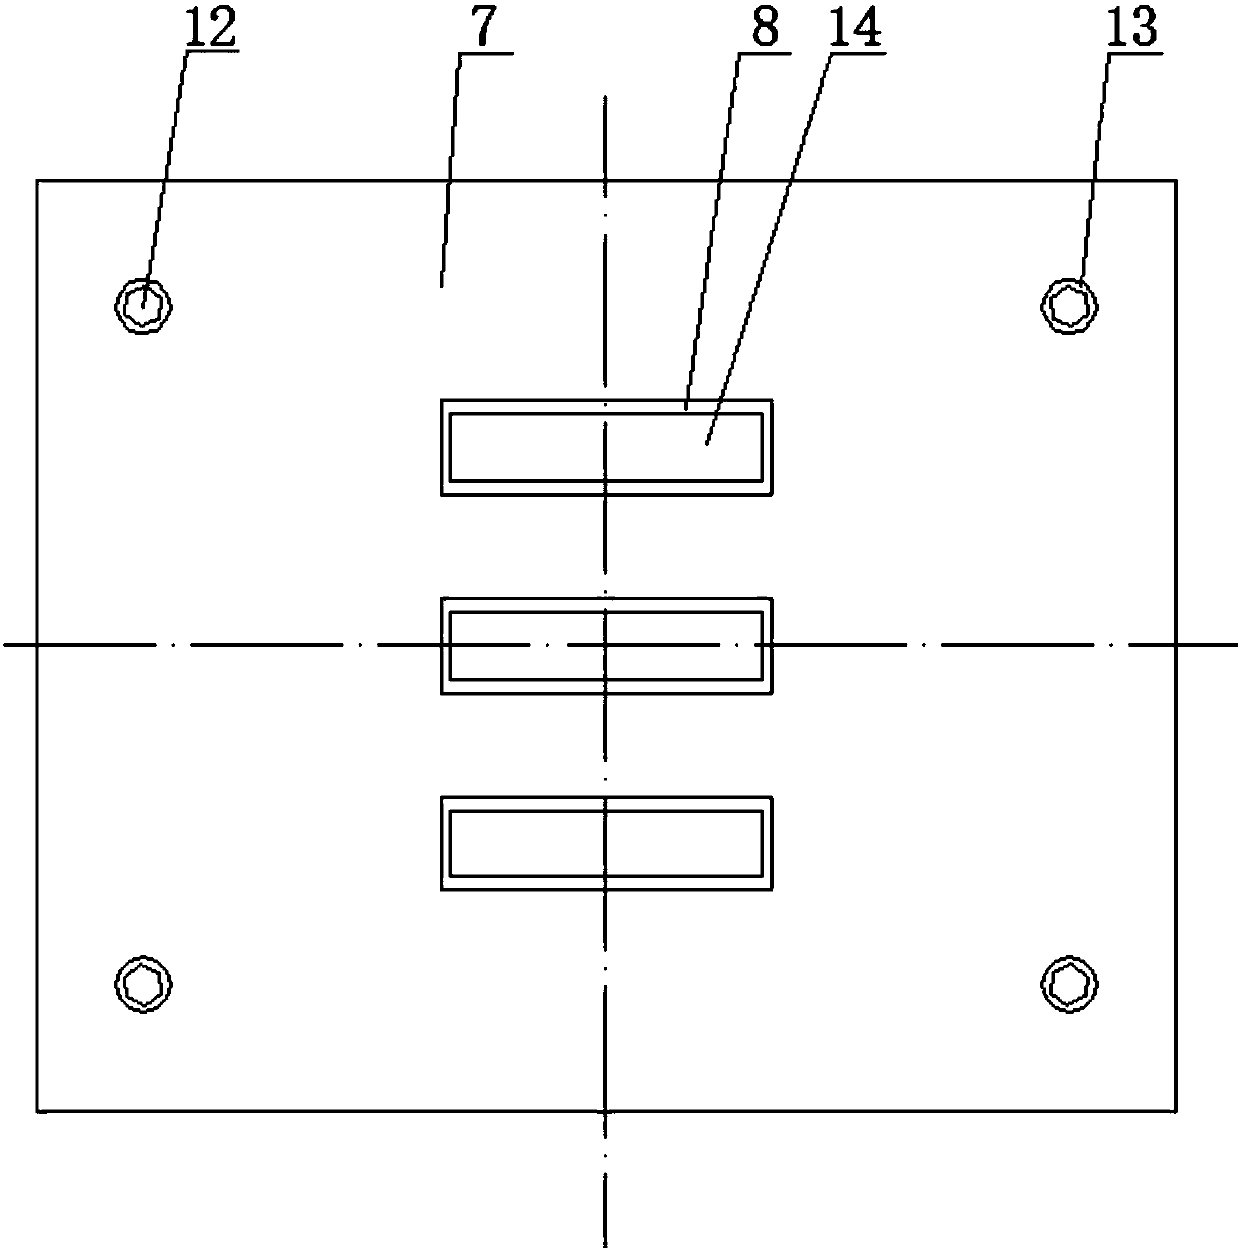 Multi-column trapezoidal fixed valve mold